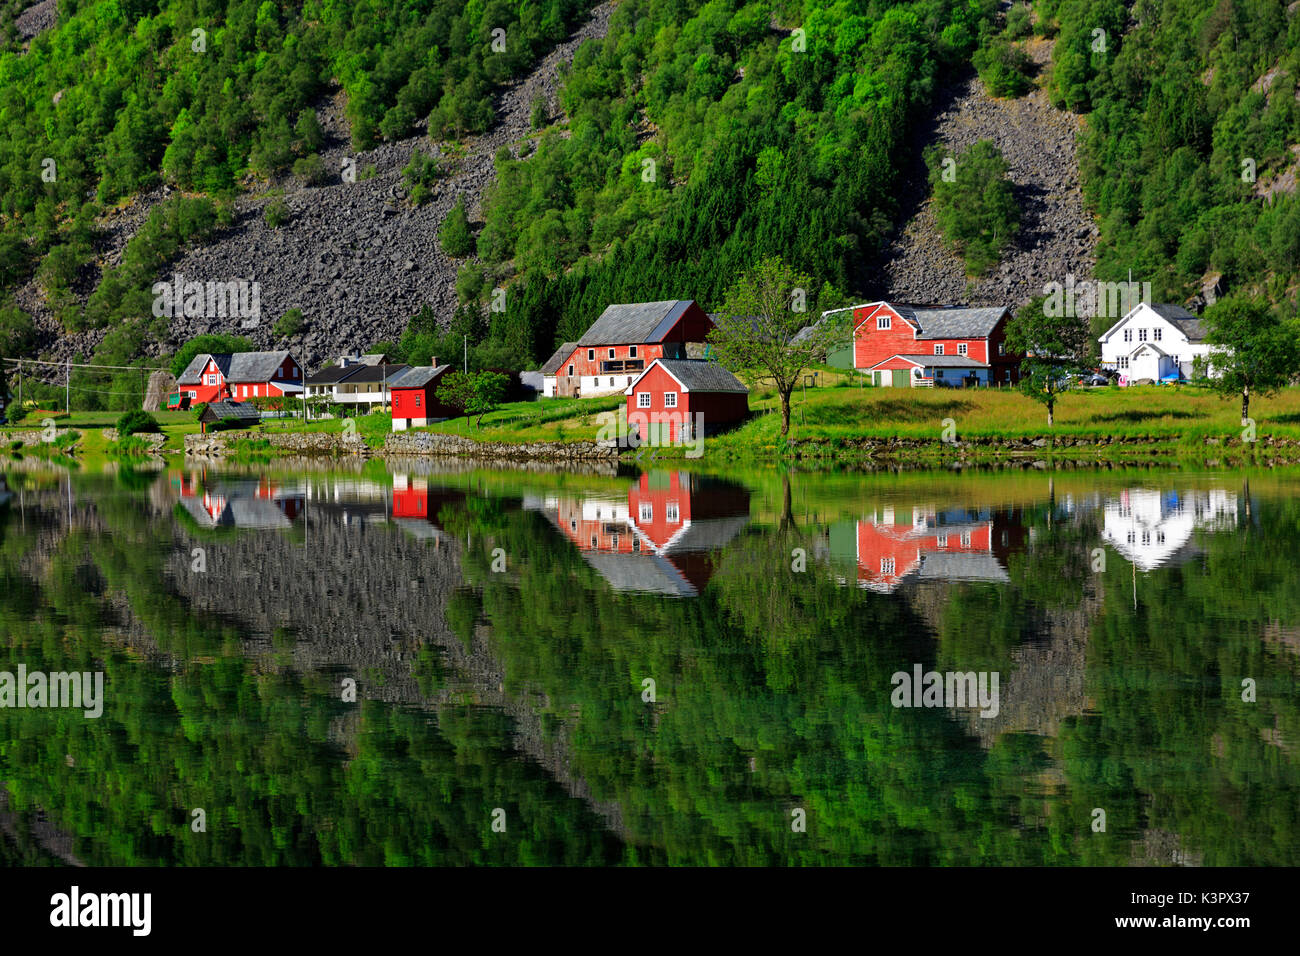 Parfait reflet de certaines maisons norvegia typique dans un lac à la fin du printemps, Odda, Norvège, Hardaland Banque D'Images